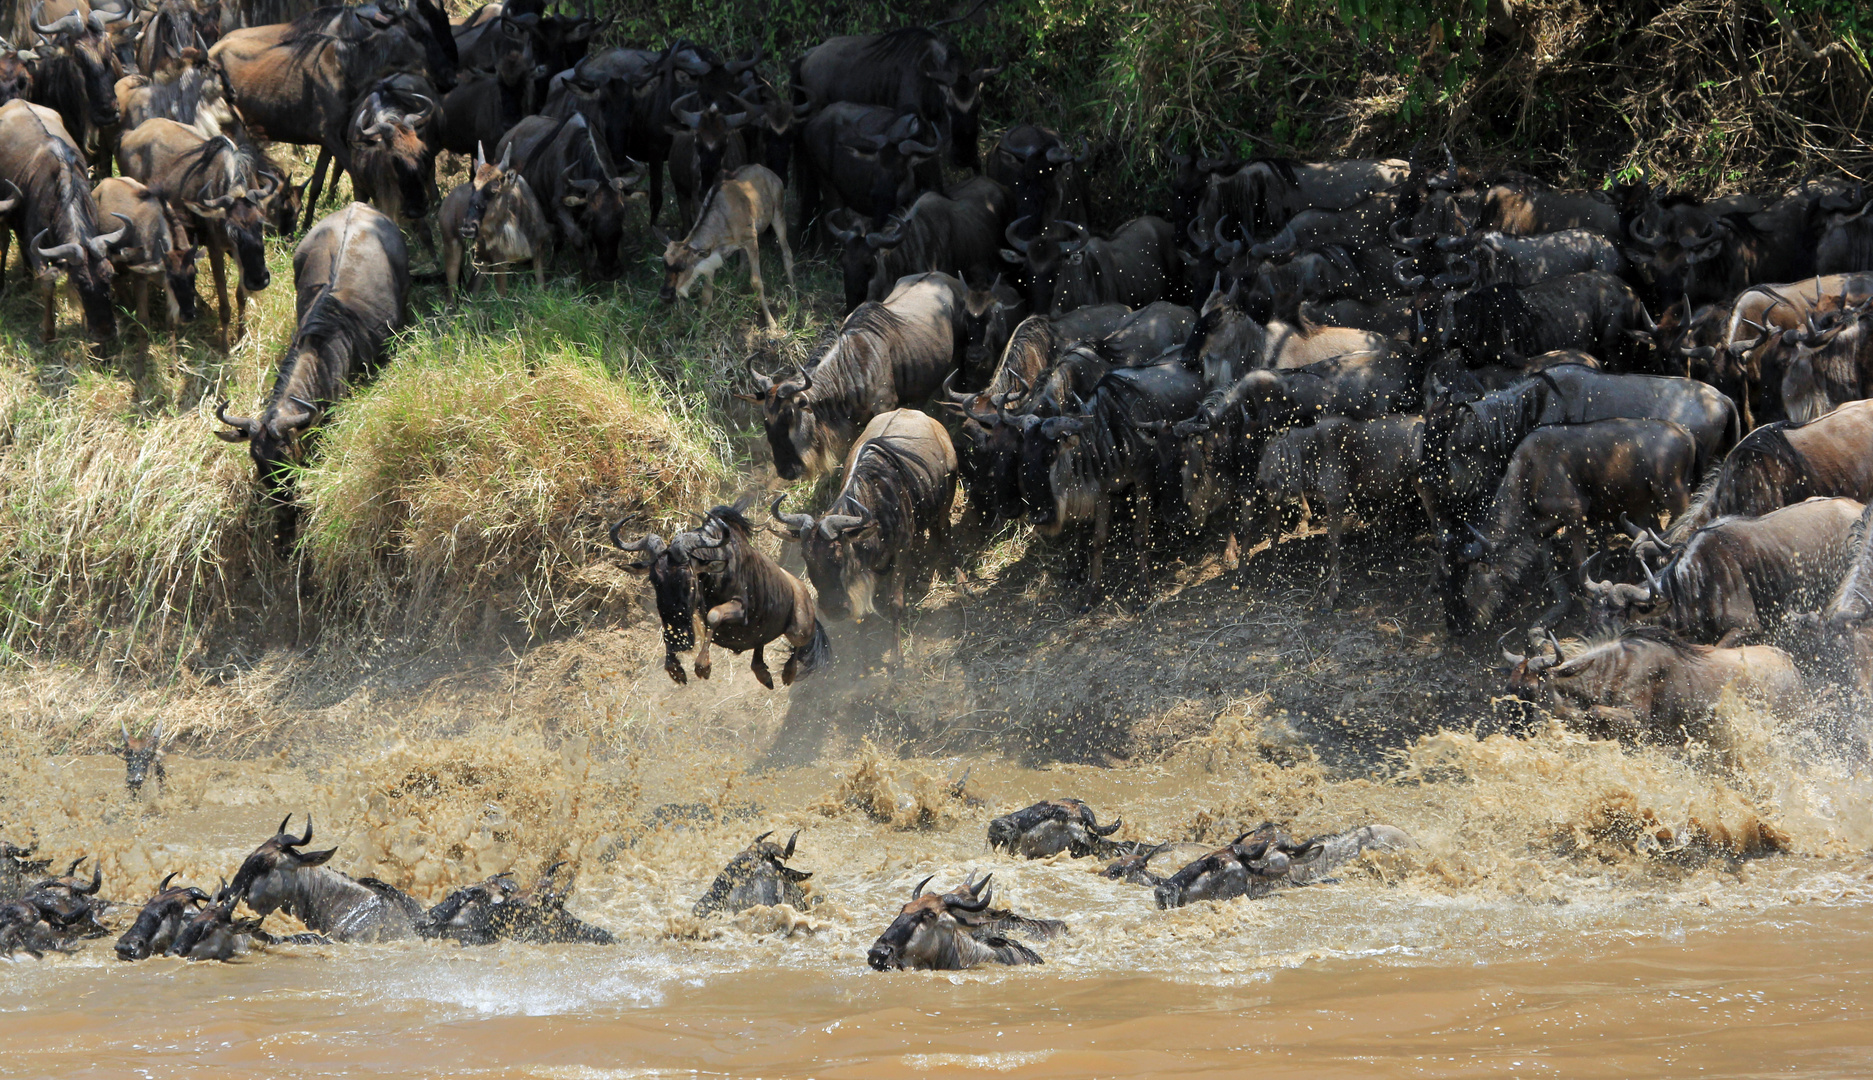 Great Migration Mara River